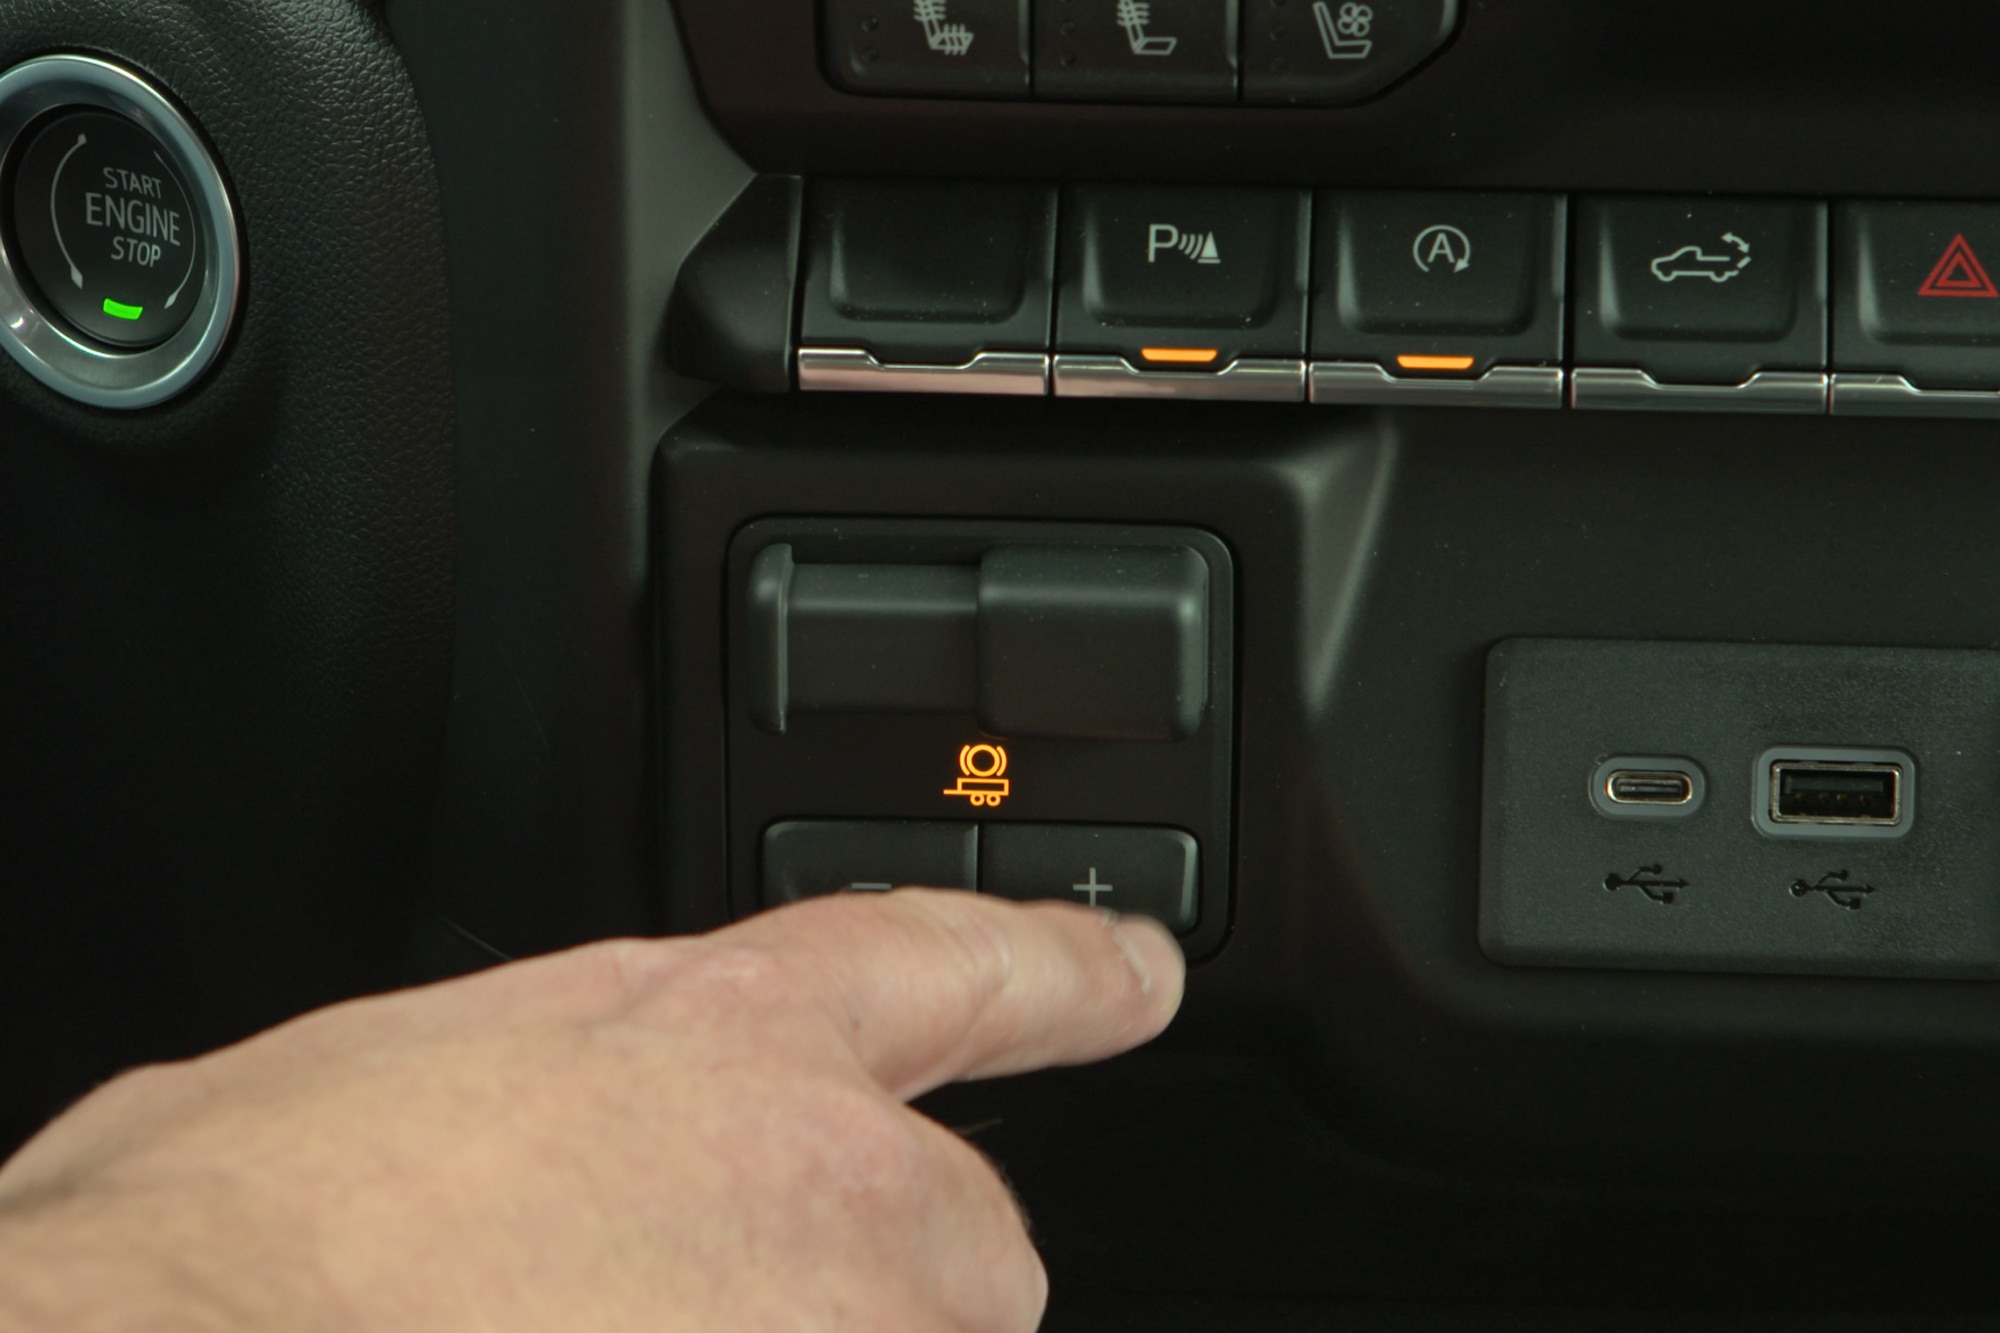 2019 Chevrolet Silverado trailer brake controller button with other car controls